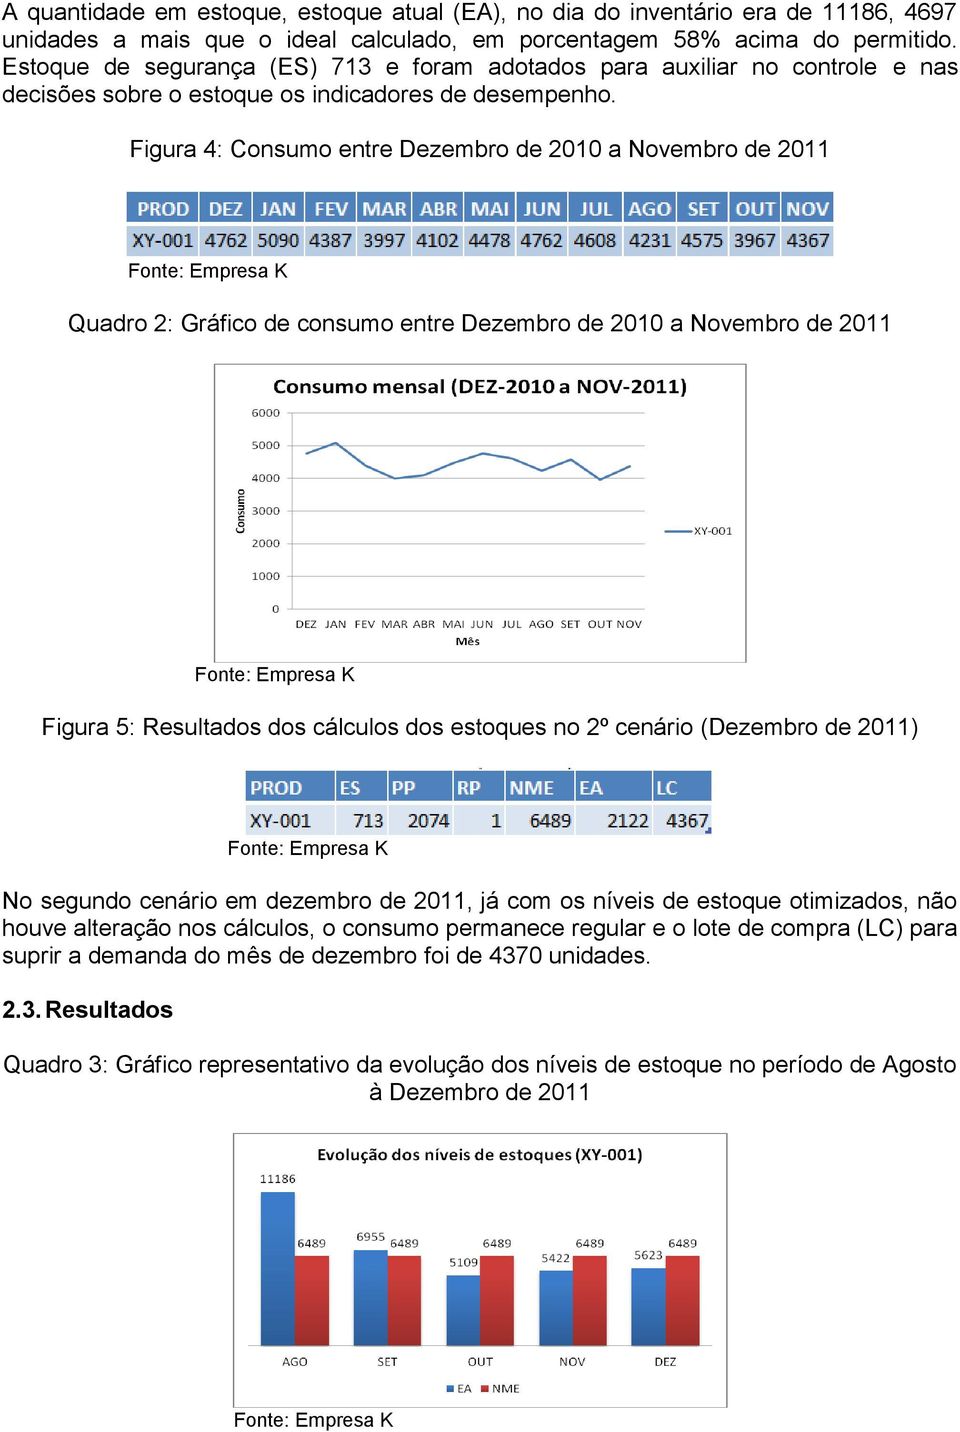 Figura 4: Consumo entre Dezembro de 2010 a Novembro de 2011 Quadro 2: Gráfico de consumo entre Dezembro de 2010 a Novembro de 2011 Figura 5: Resultados dos cálculos dos estoques no 2º cenário